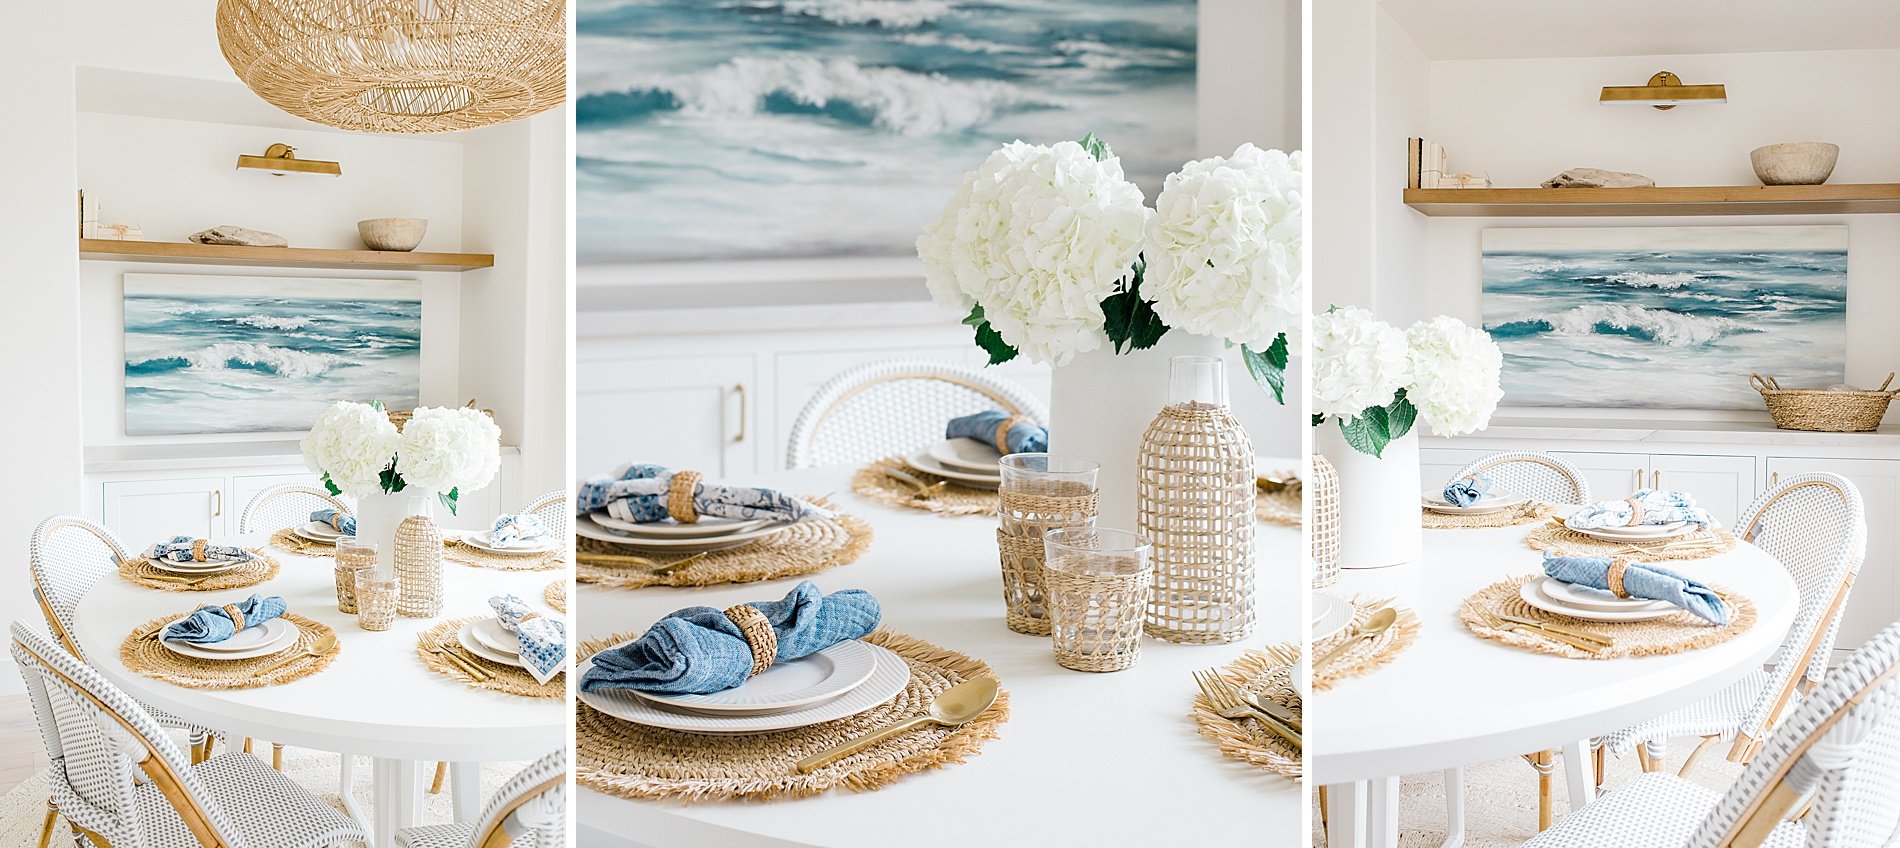  coastal dining room inspiration  